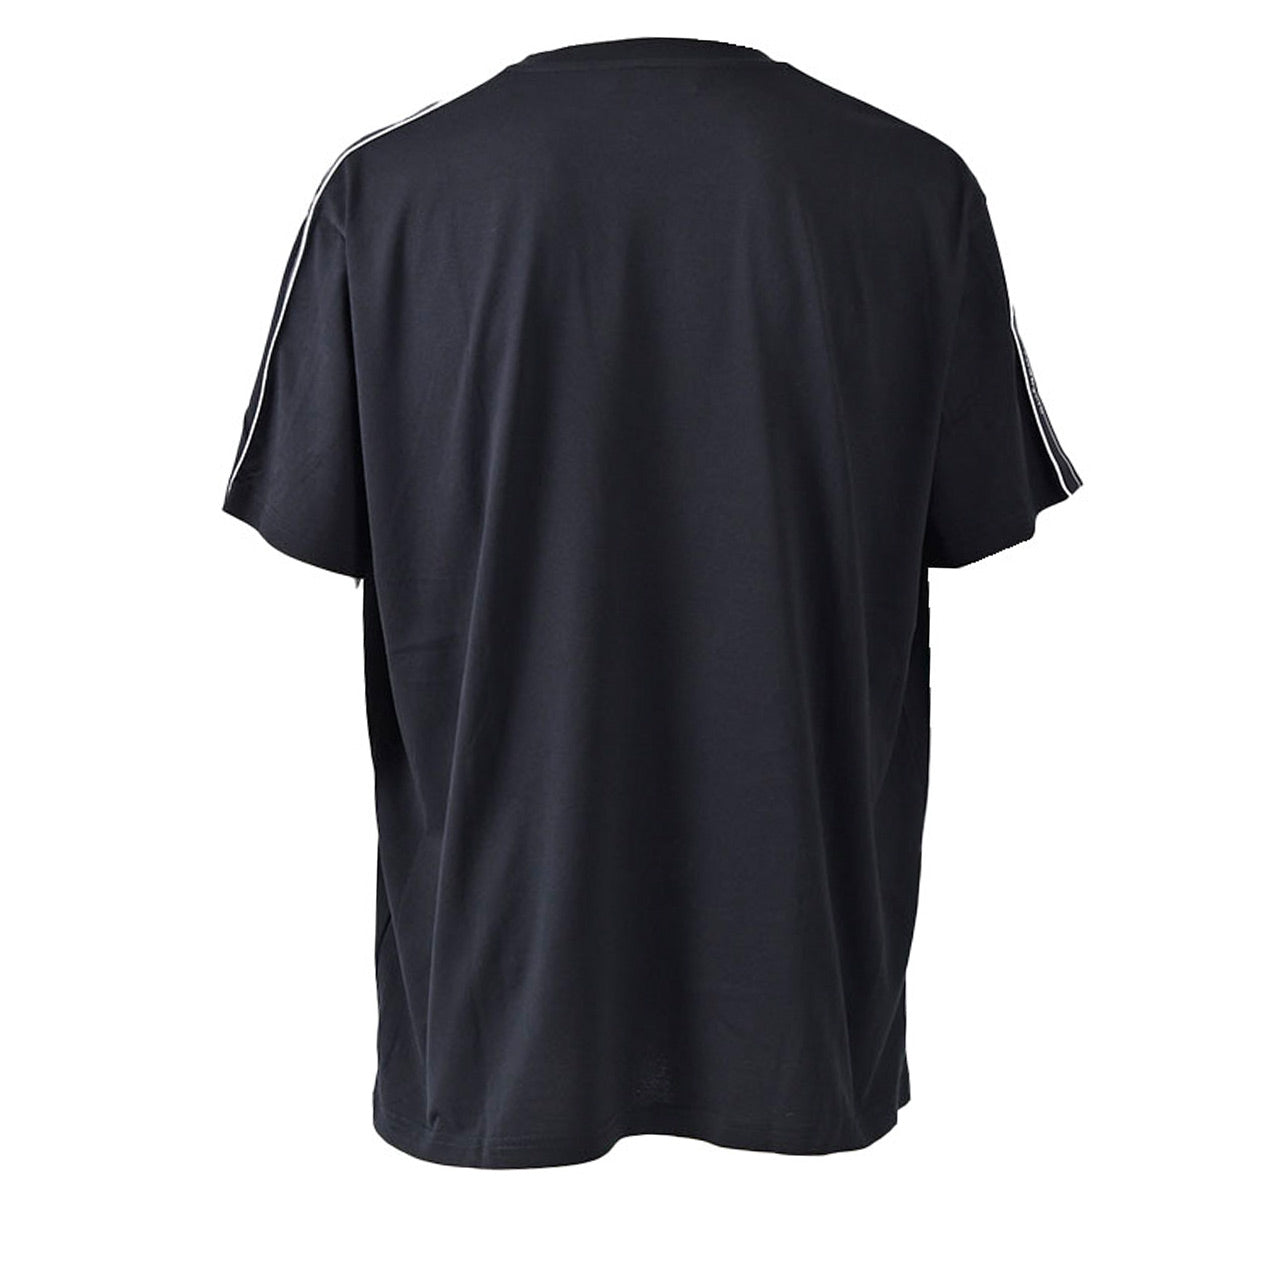 ジバンシィ GIVENCHY Tシャツ BM70UJ3002 001 ブラック  メンズ